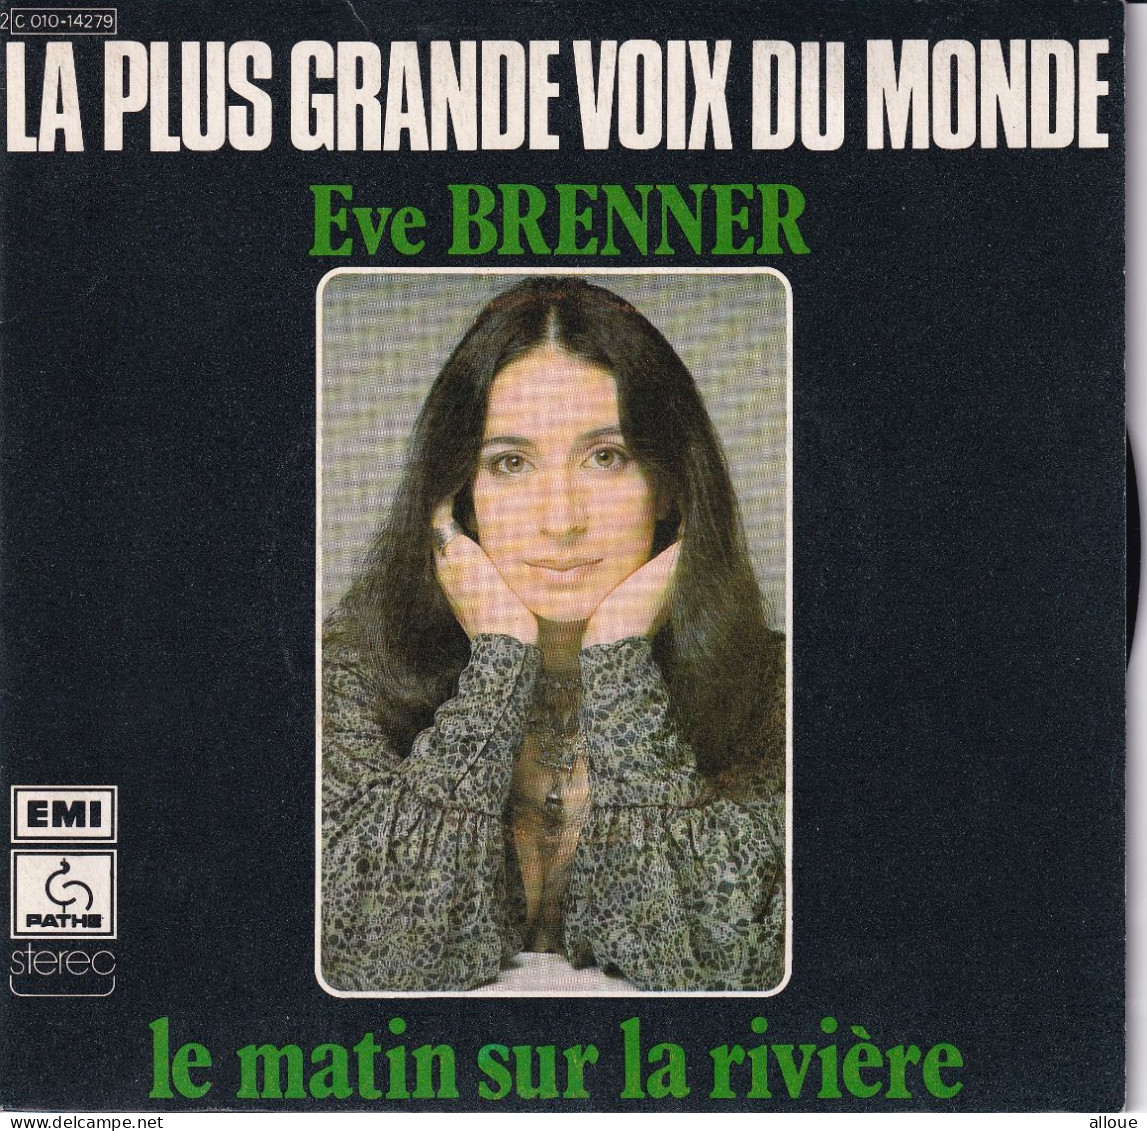 EVE BRENNER - FR SG - LE MATIN SUR LA RIVIERE + 1 - Andere - Franstalig